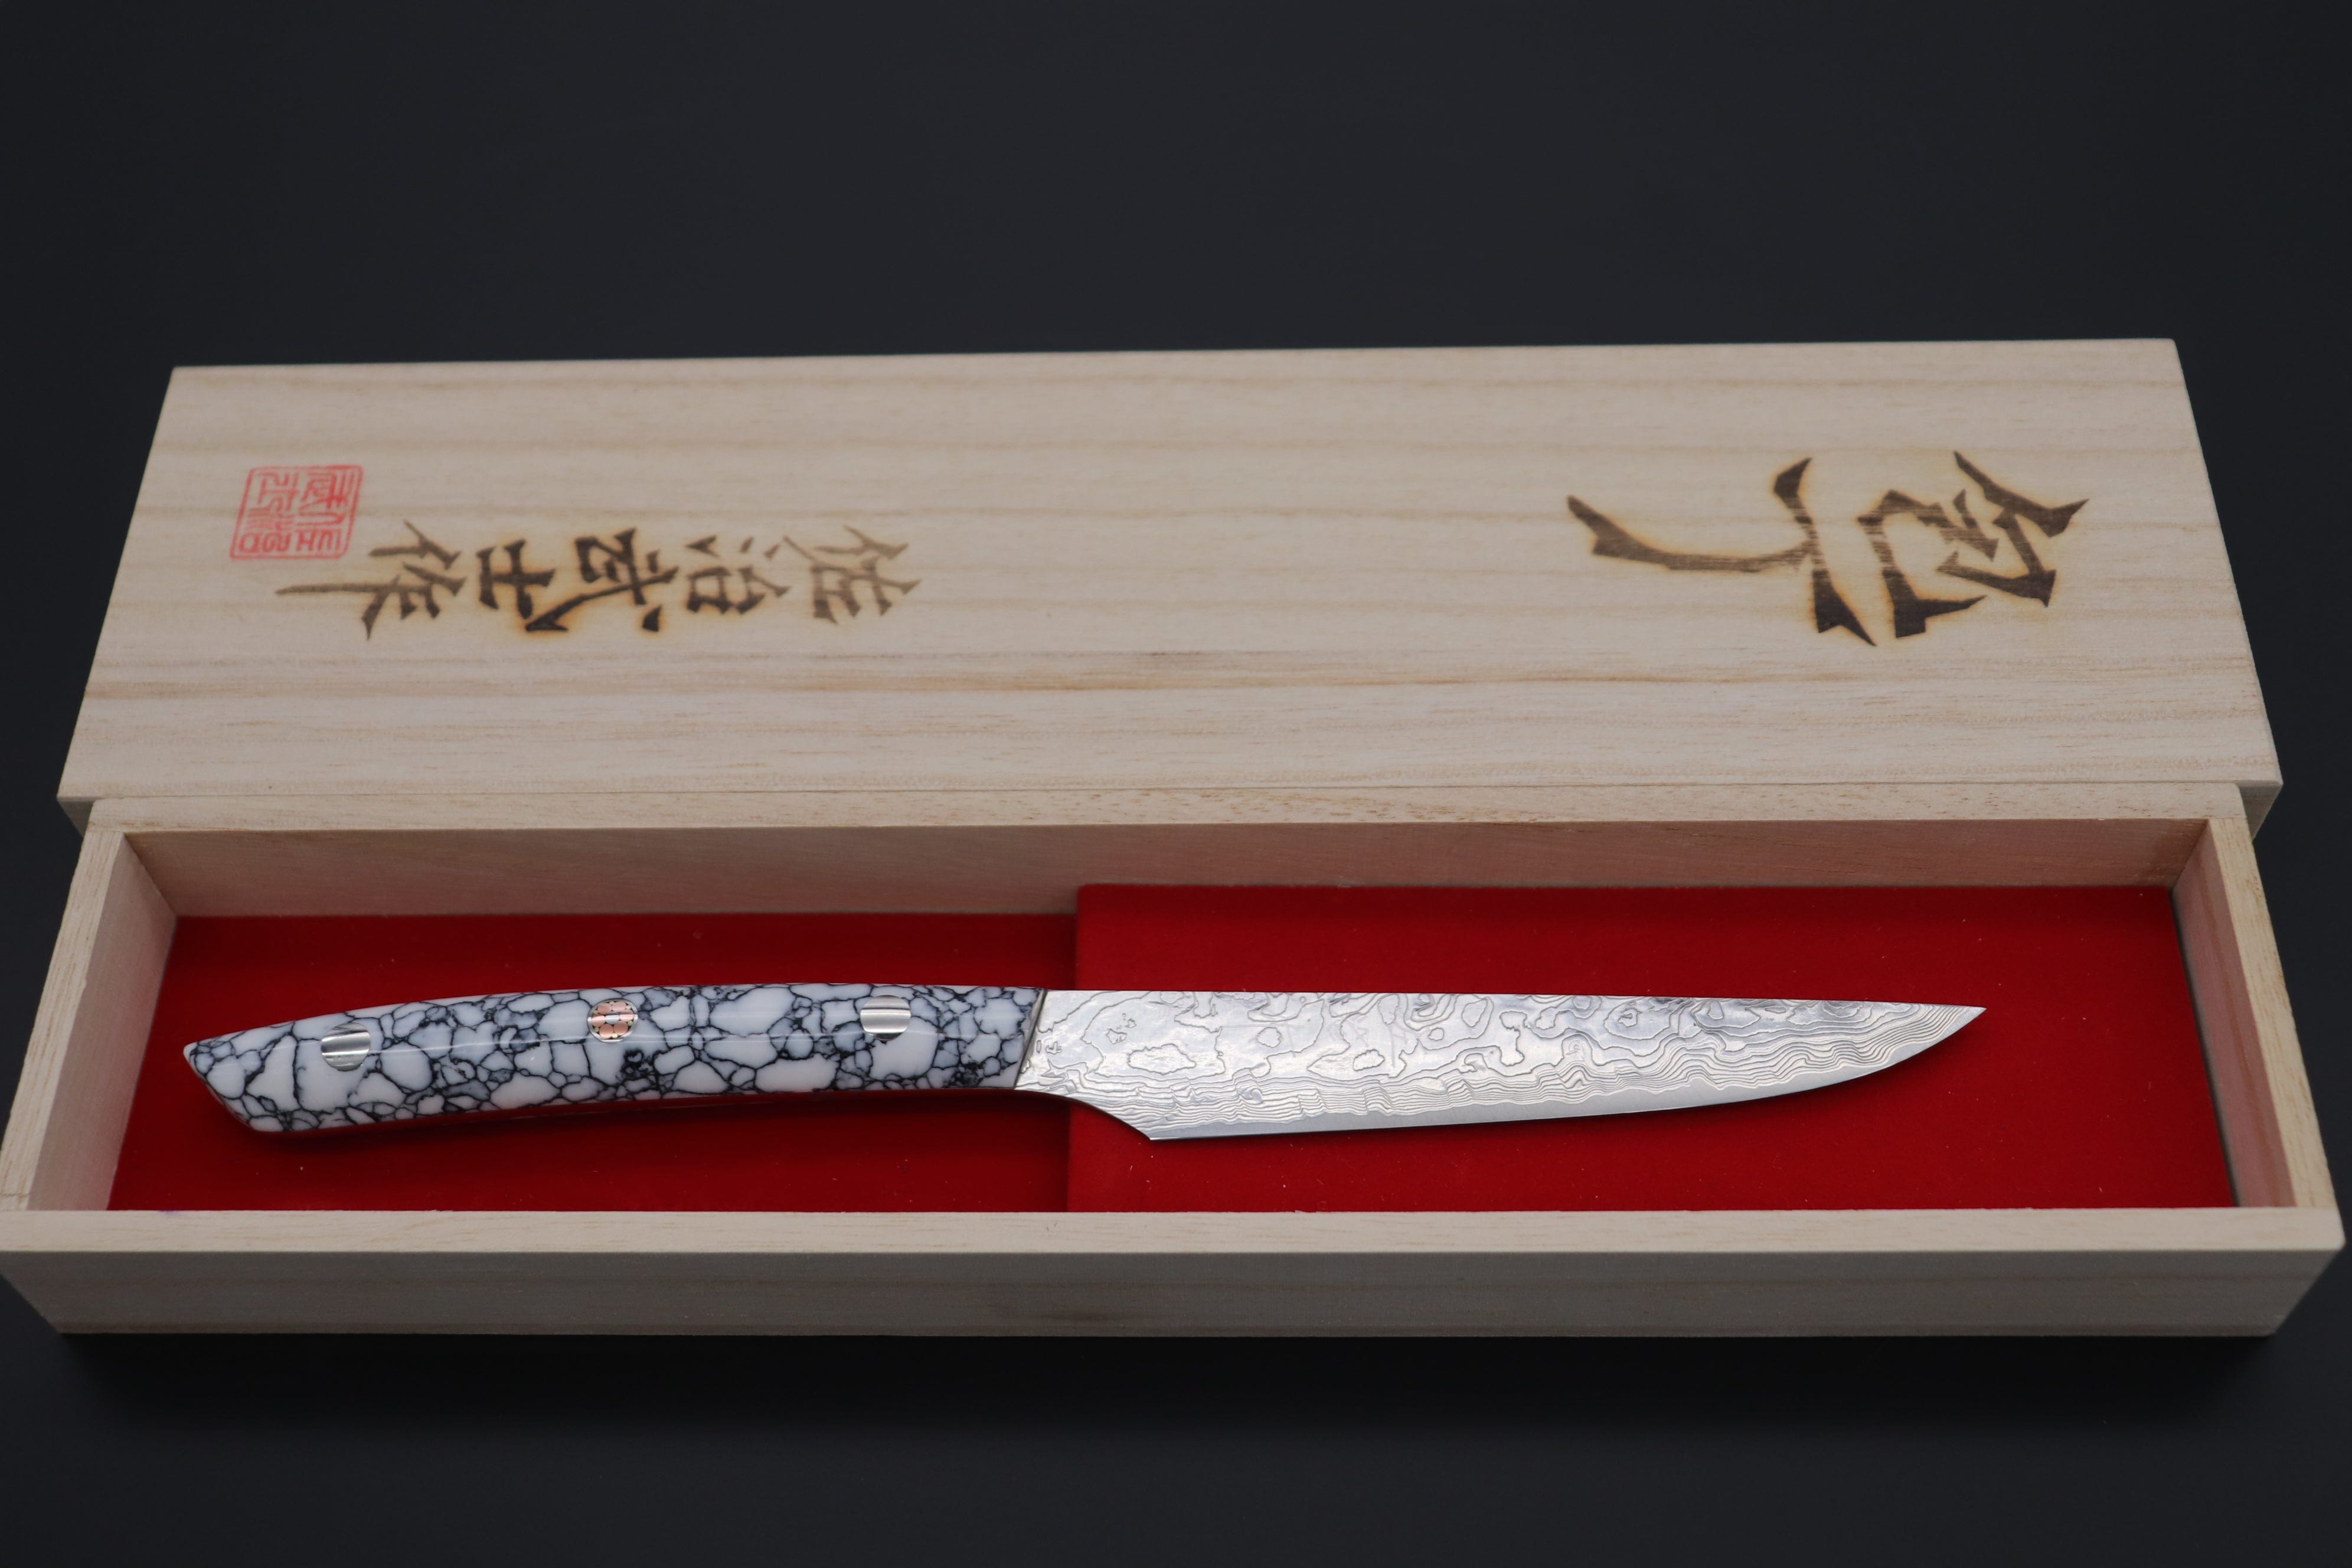 Buy Japanese Damascus Steel Steak Knives